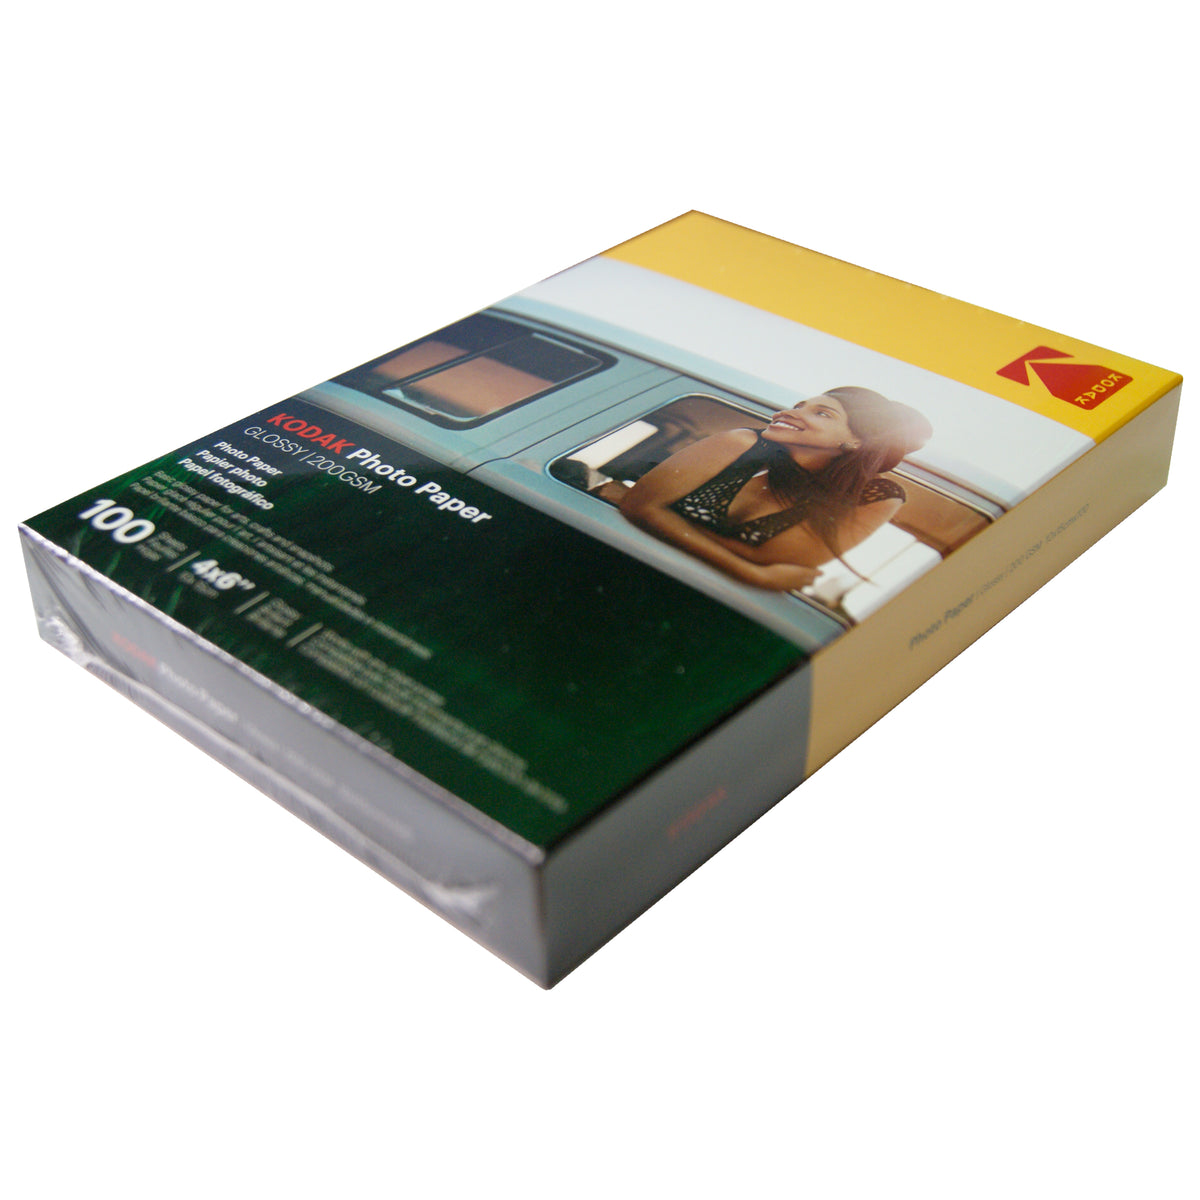 200g Kodak Glossy Photo Paper, 8.5 x 11, 100/Pack (9891-189